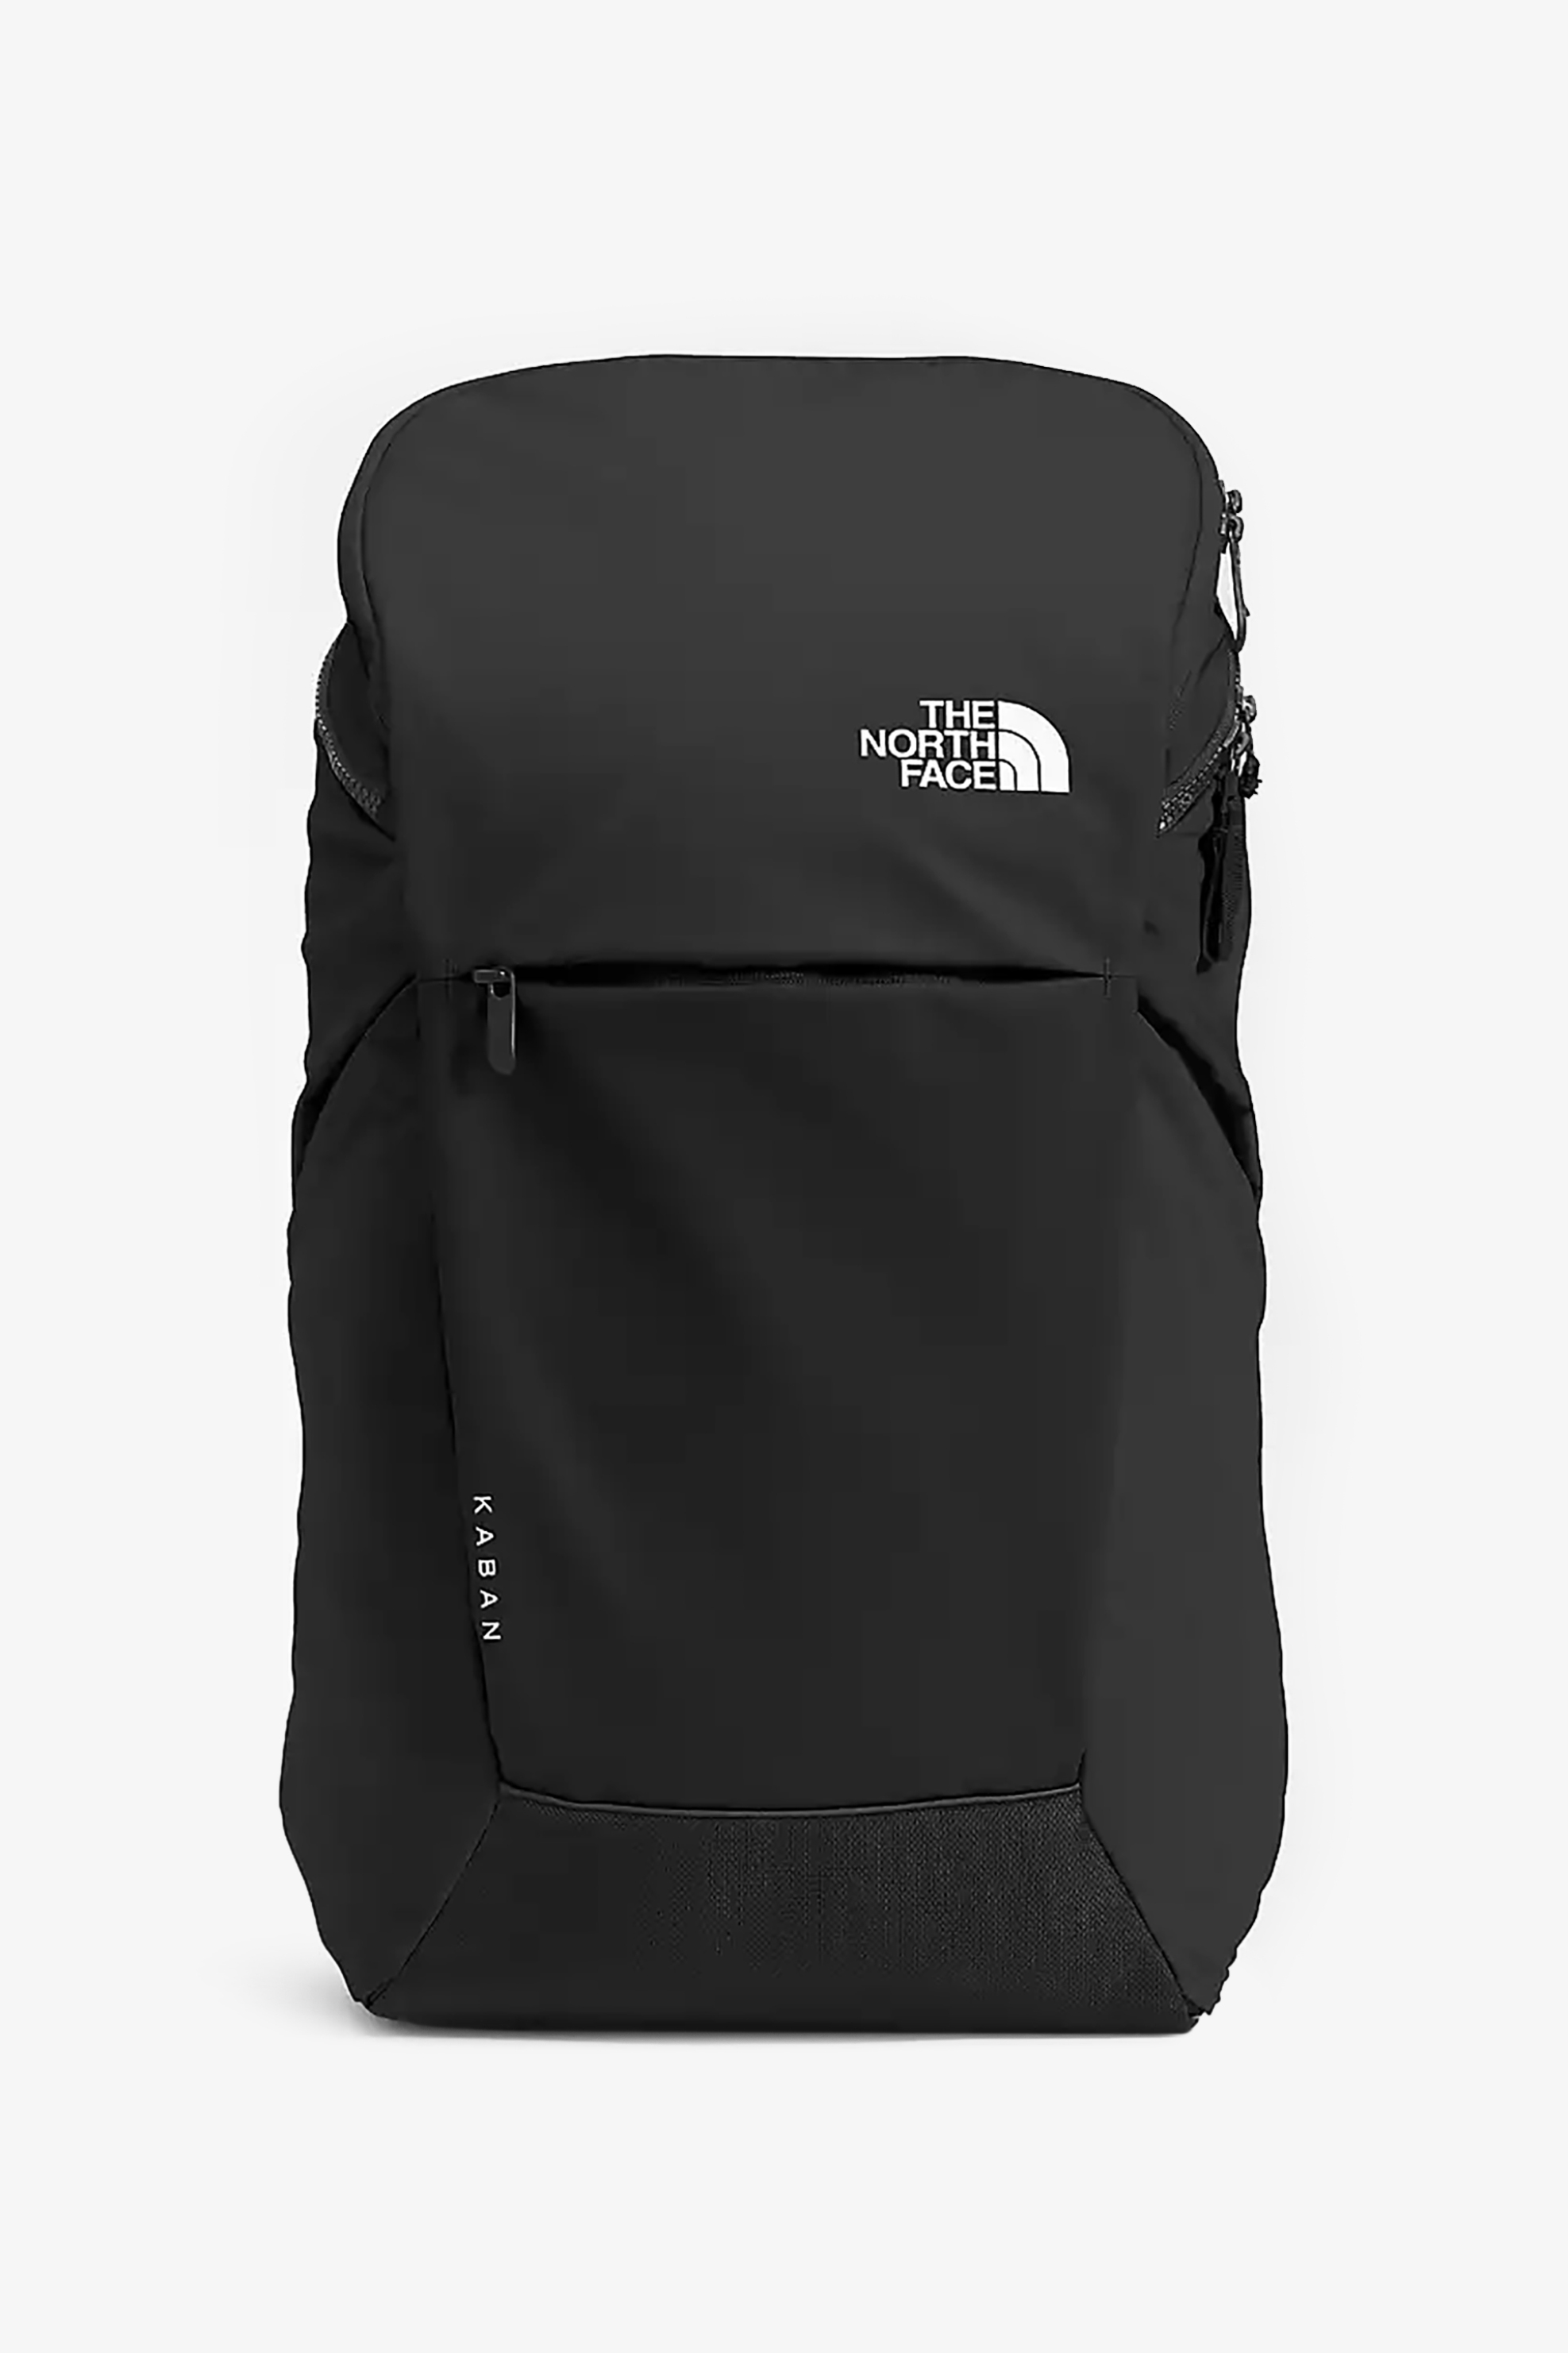 Ανδρική Μόδα > Ανδρικές Τσάντες > Ανδρικά Σακίδια & Backpacks The North Face unisex backpack με logo print "Kaban 2.0" - NF0A52SZKX71 Μαύρο